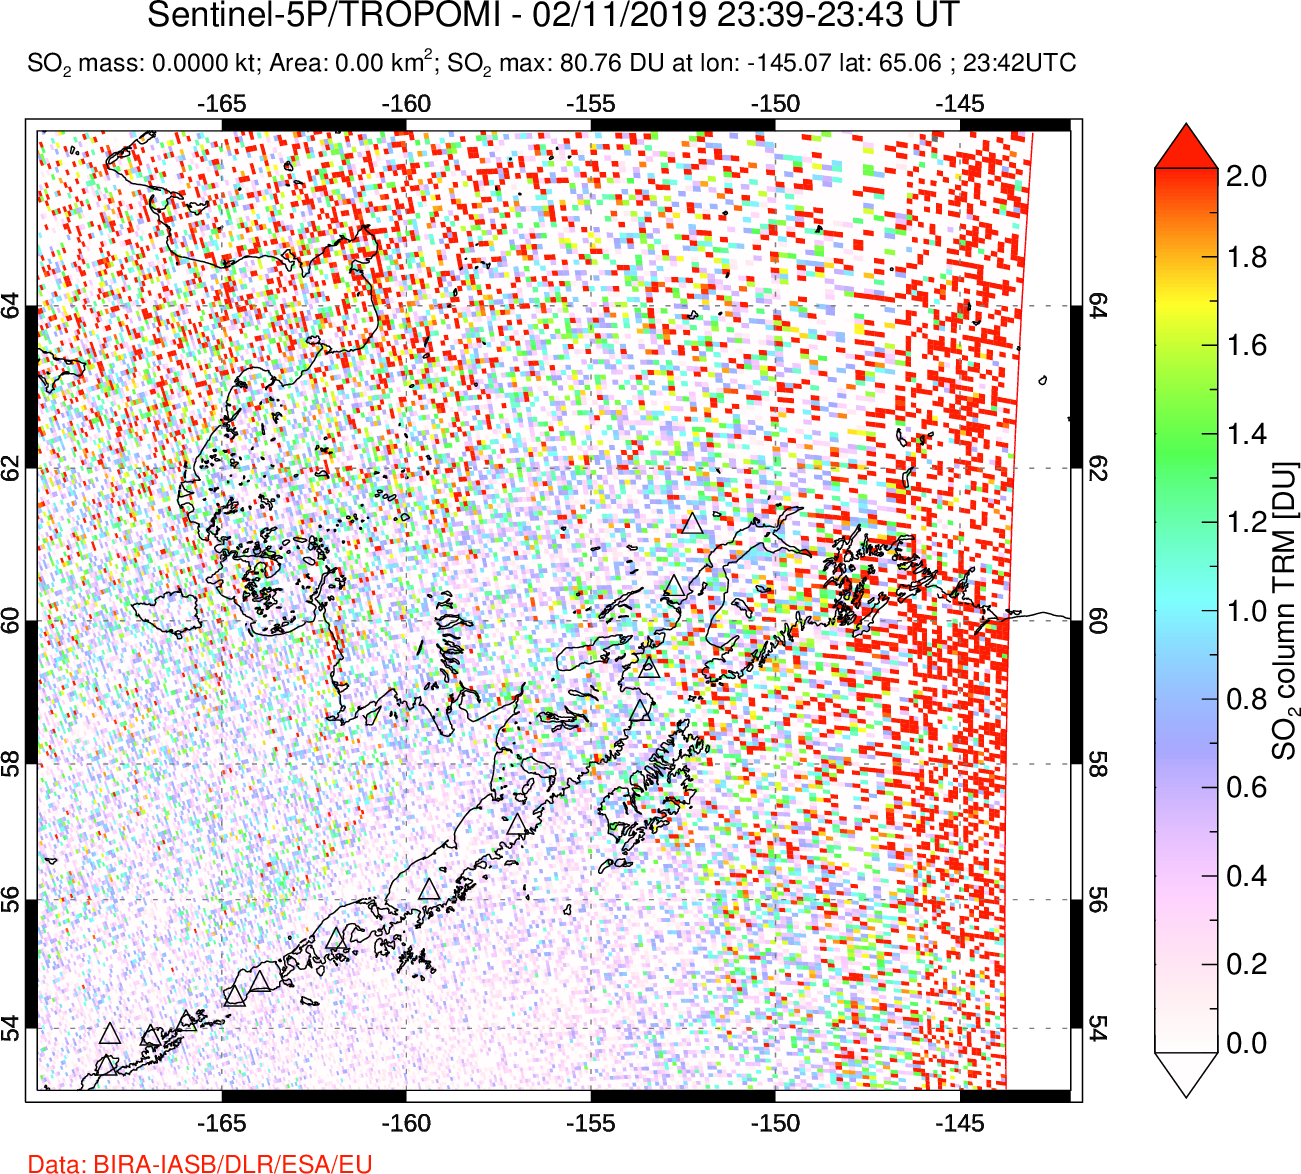 A sulfur dioxide image over Alaska, USA on Feb 11, 2019.